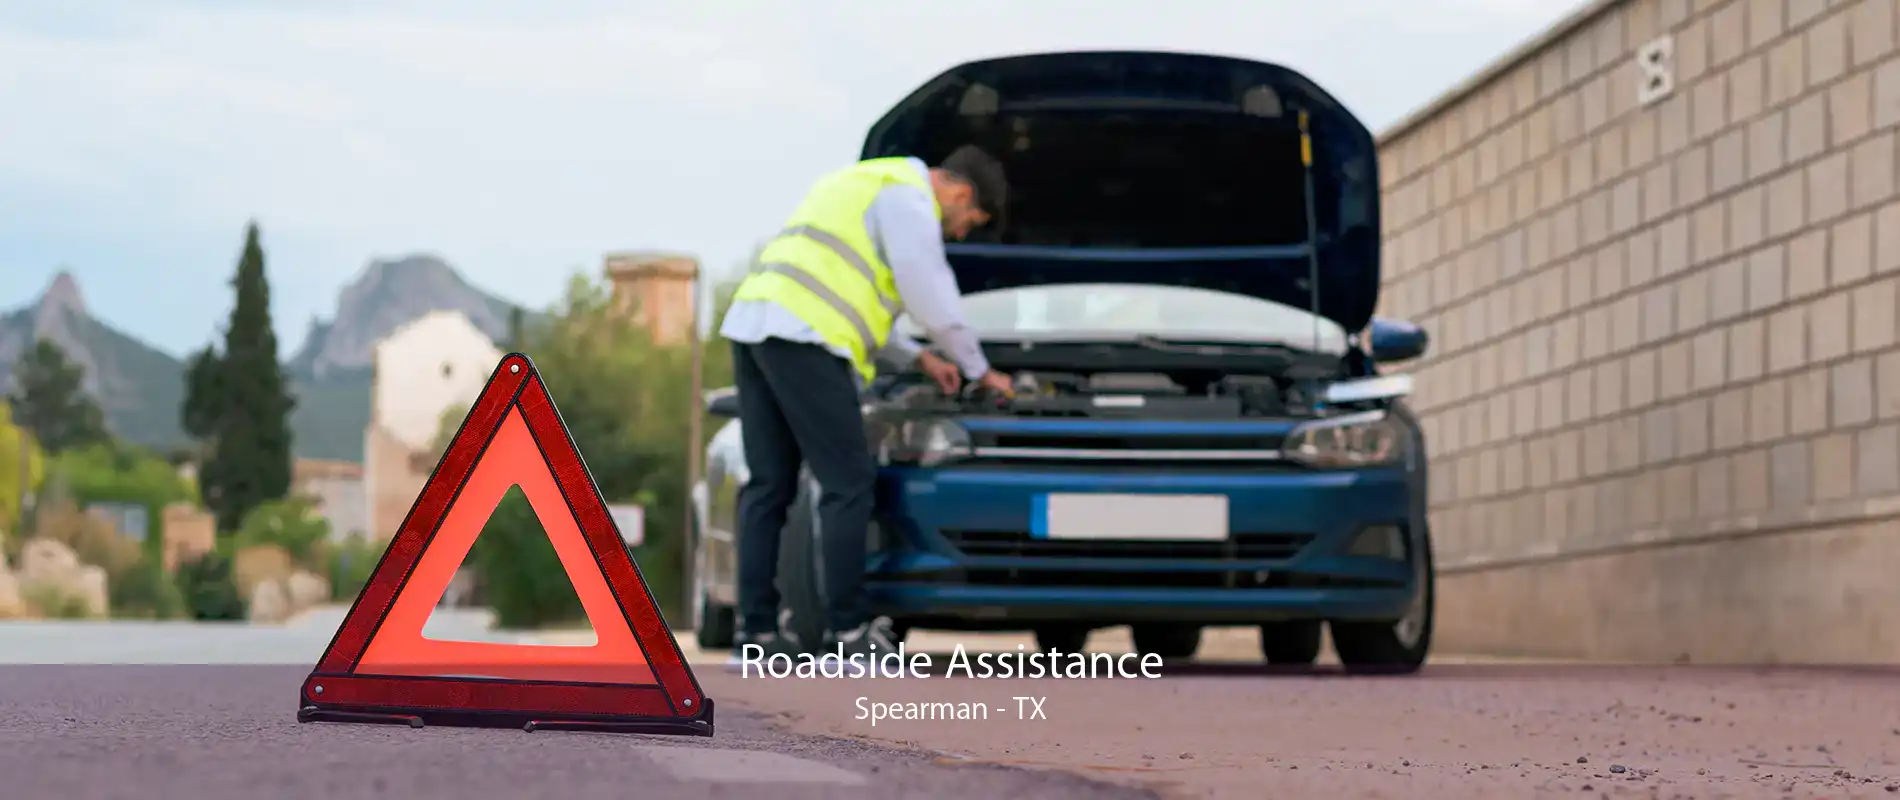 Roadside Assistance Spearman - TX